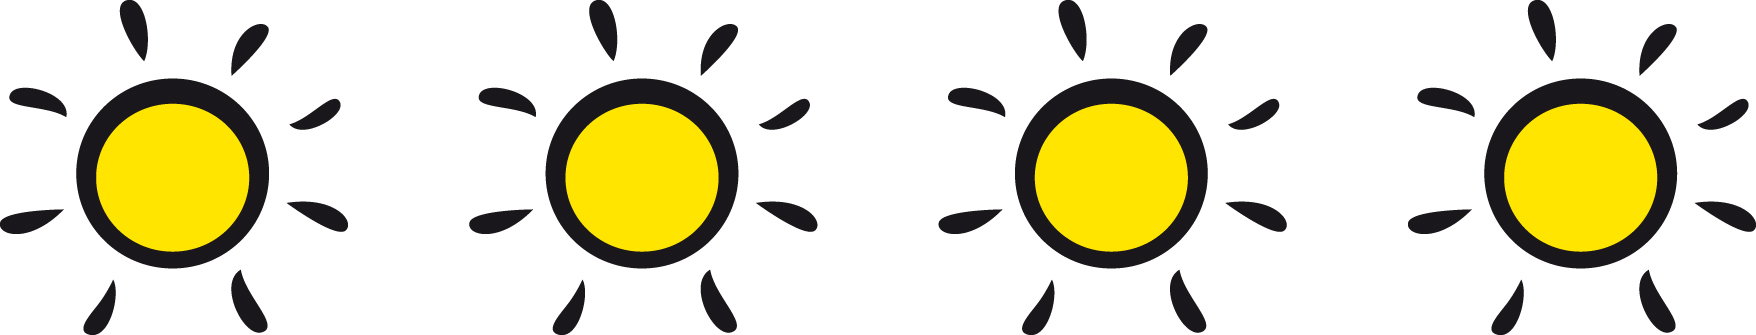 Logo Privat zu Gast - 4 Sonnen